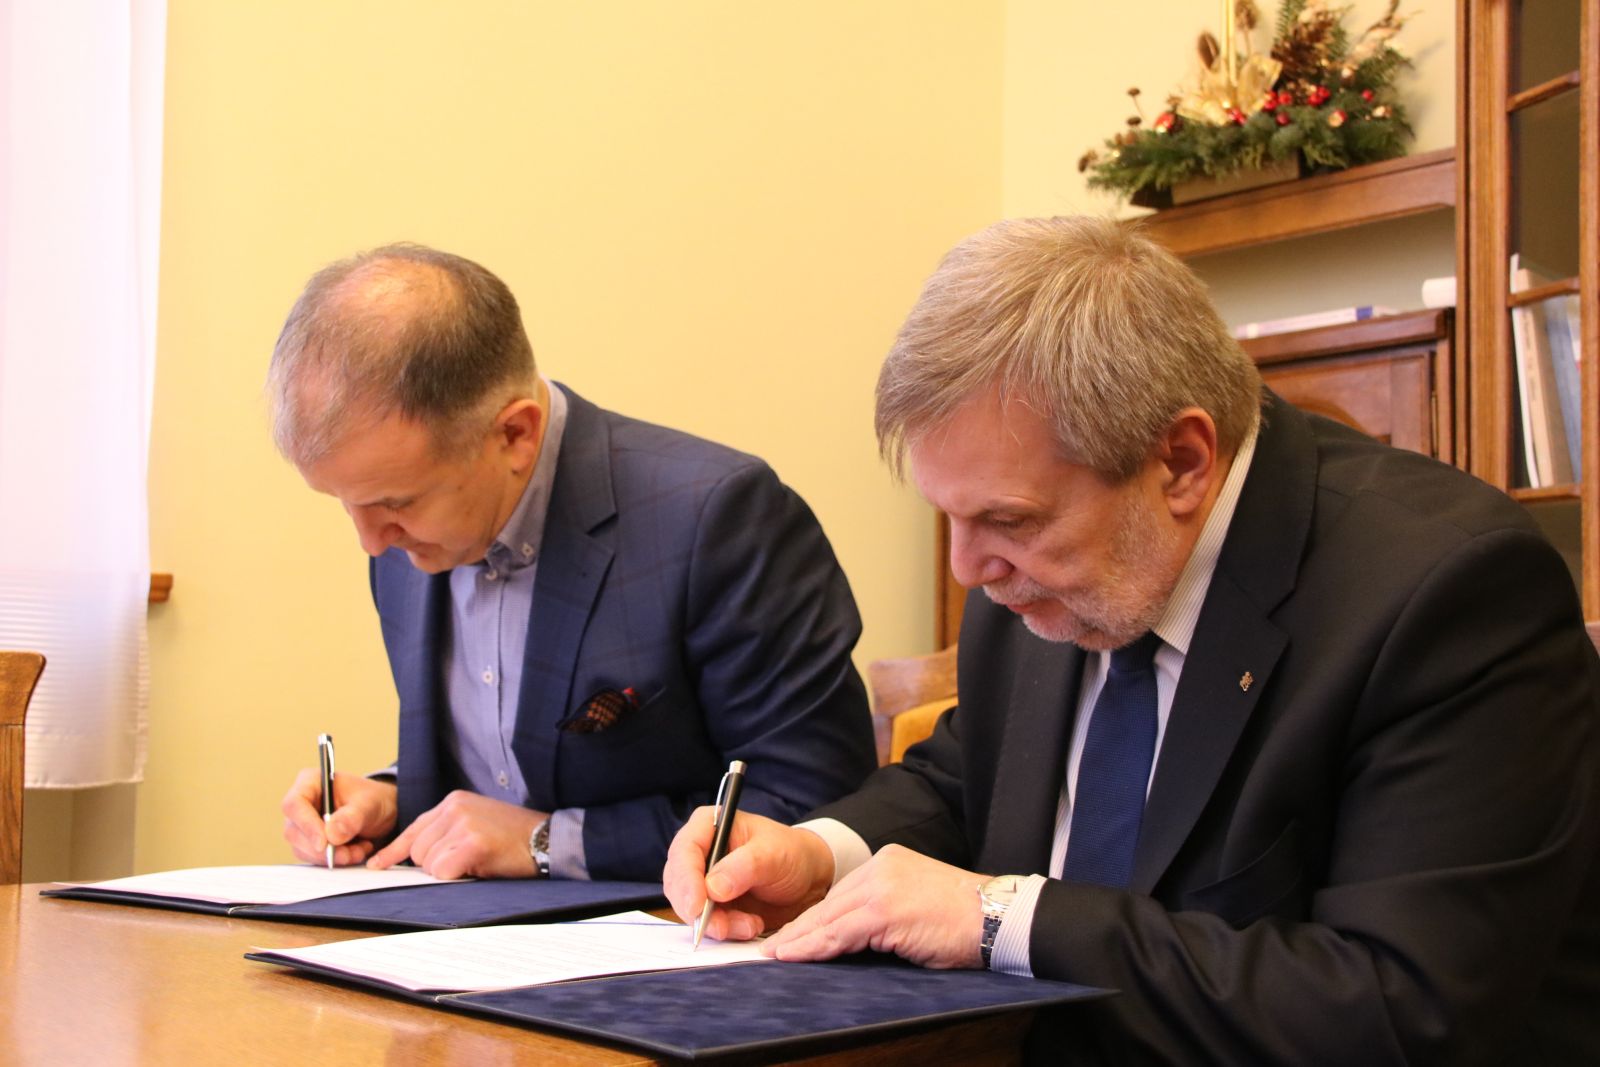 Umowę o współpracy pomiędzy Uniwersytetem a firmą Komputronik Biznes Sp. z o.o. podpisali prof. Marek Nawrocki oraz pan Sebastian Pawłowski